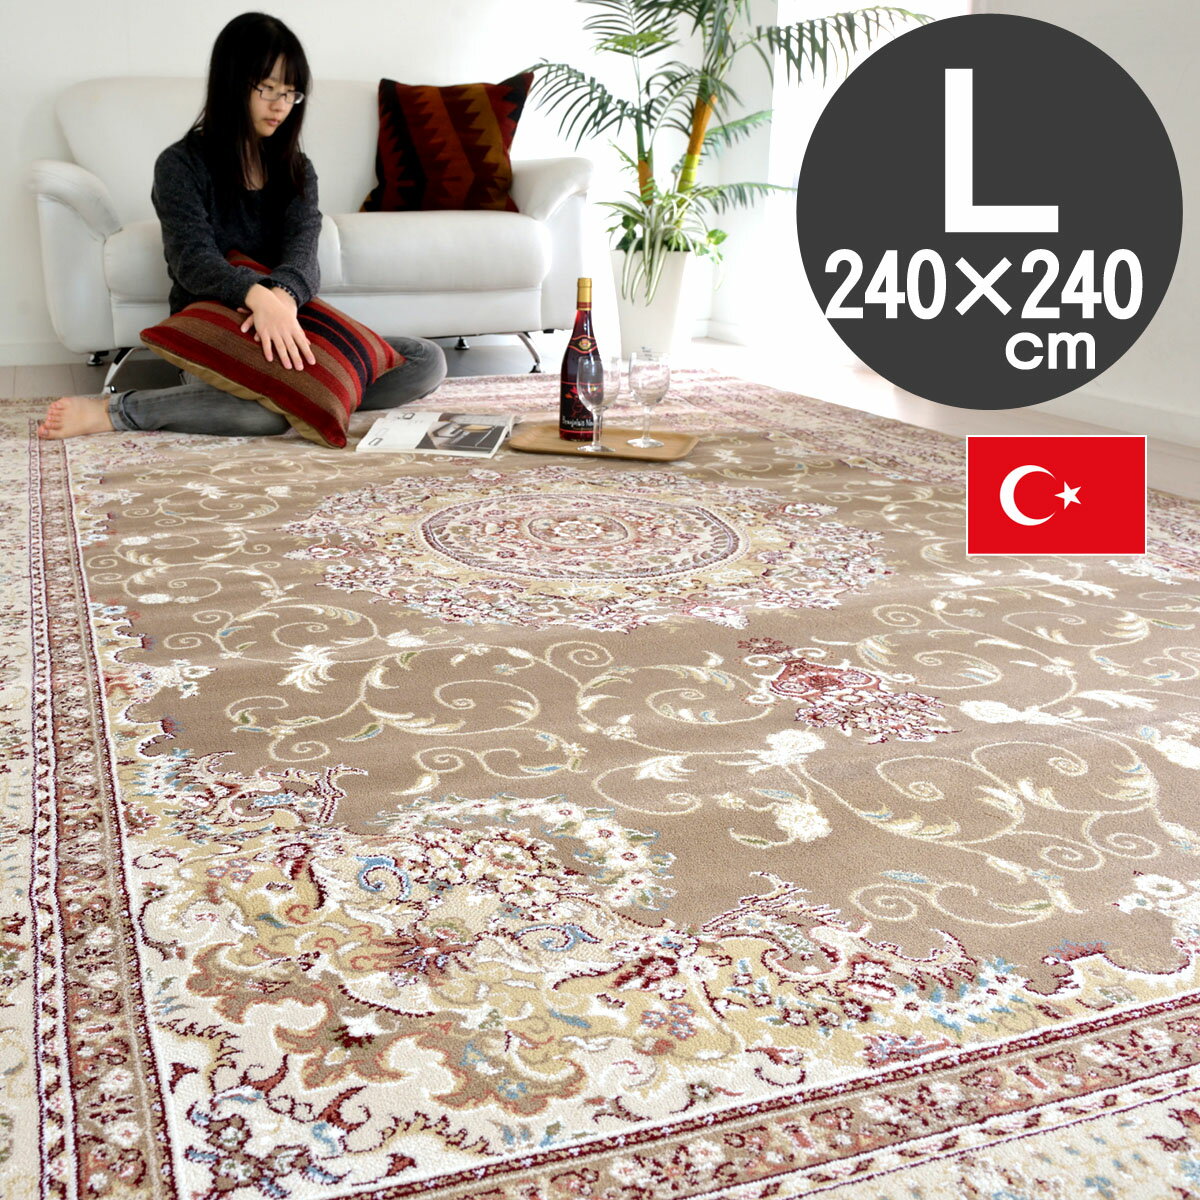 ヨーロピアンラグ トルコ製 クラシックデザイン240×240 約4.5畳イスフアハン6251(ロゼリアT8748) ブラウンインポートラグ カーペット 絨毯 4.5帖用classic design